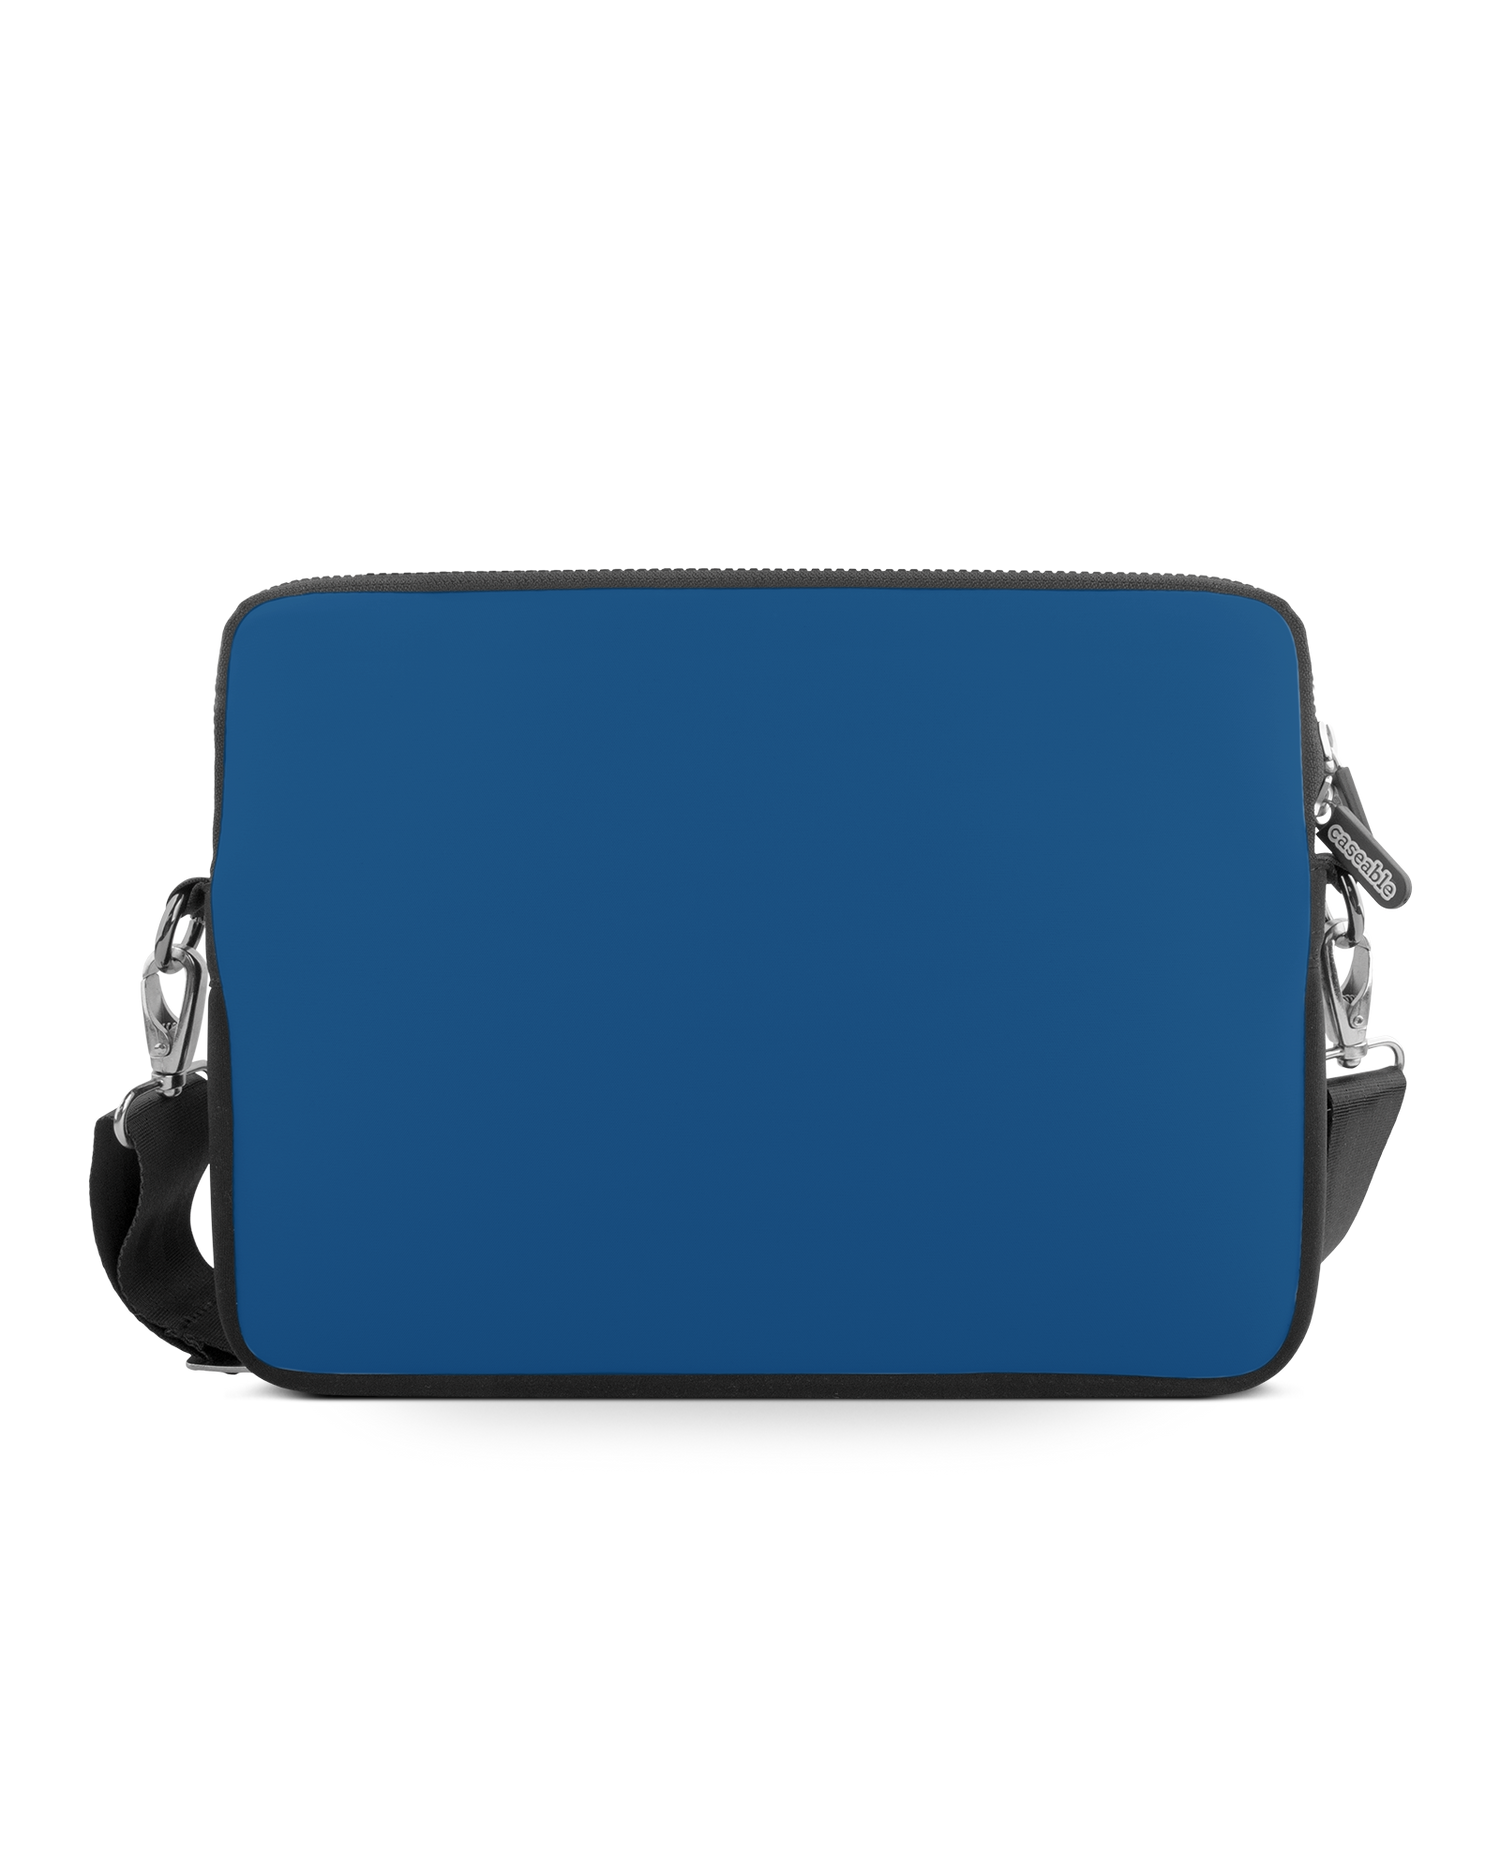 CLASSIC BLUE Premium Laptop Bag 15 inch: Front View